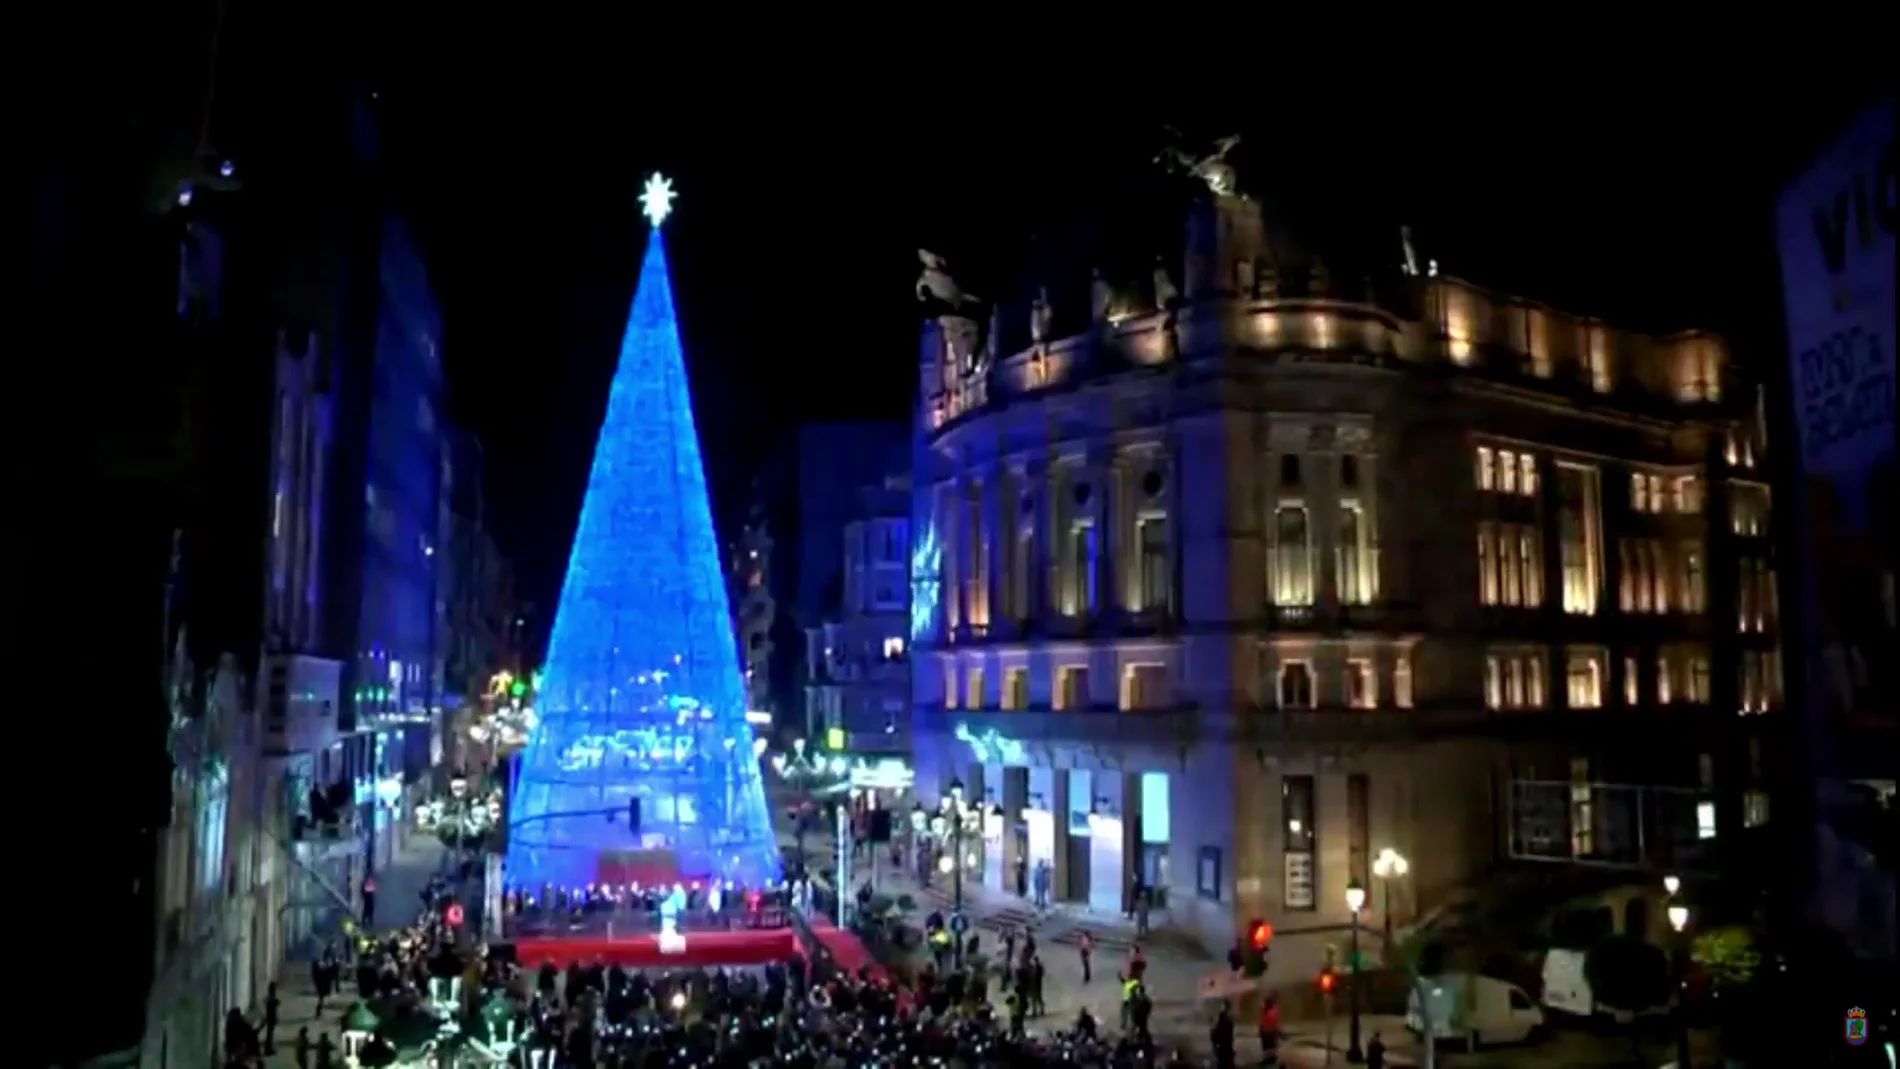 Luces de Navidad de Vigo: vídeo completo del encendido